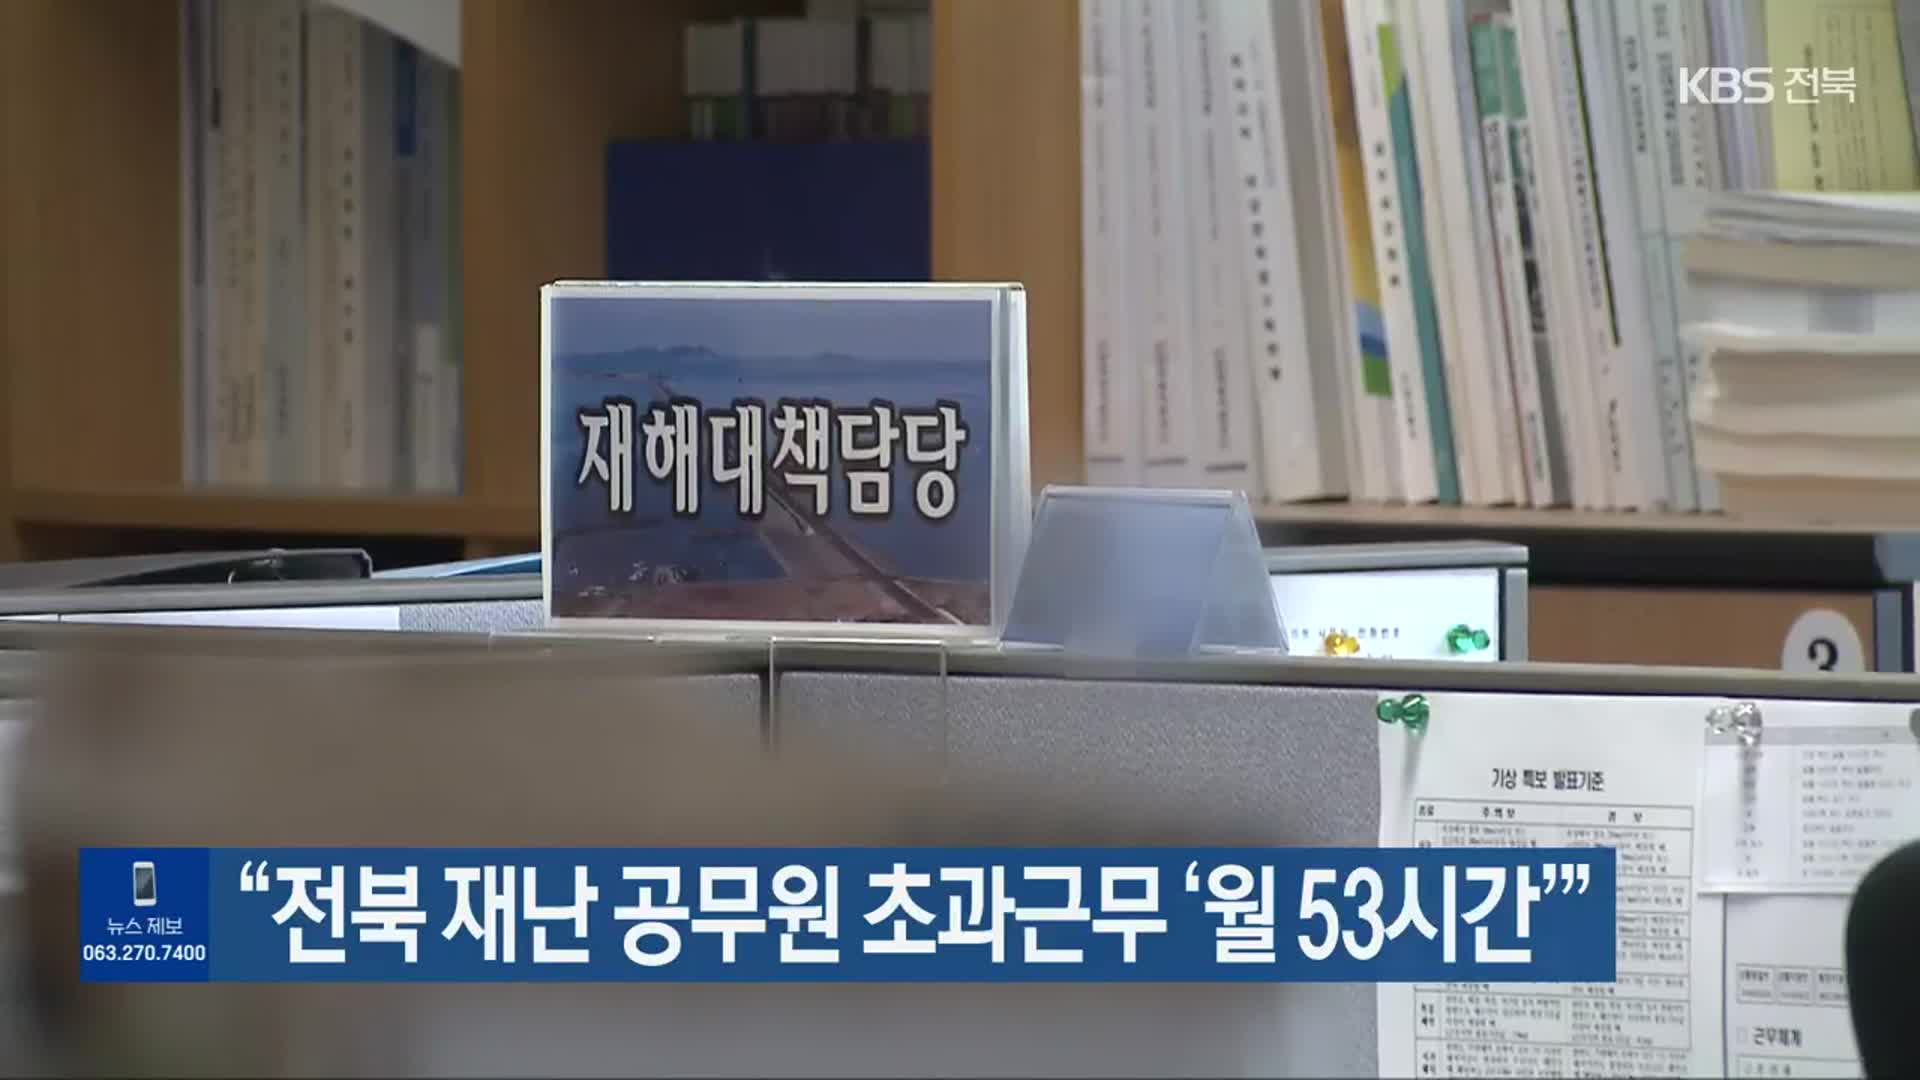 “전북 재난 공무원 초과근무 ‘월 53시간’”